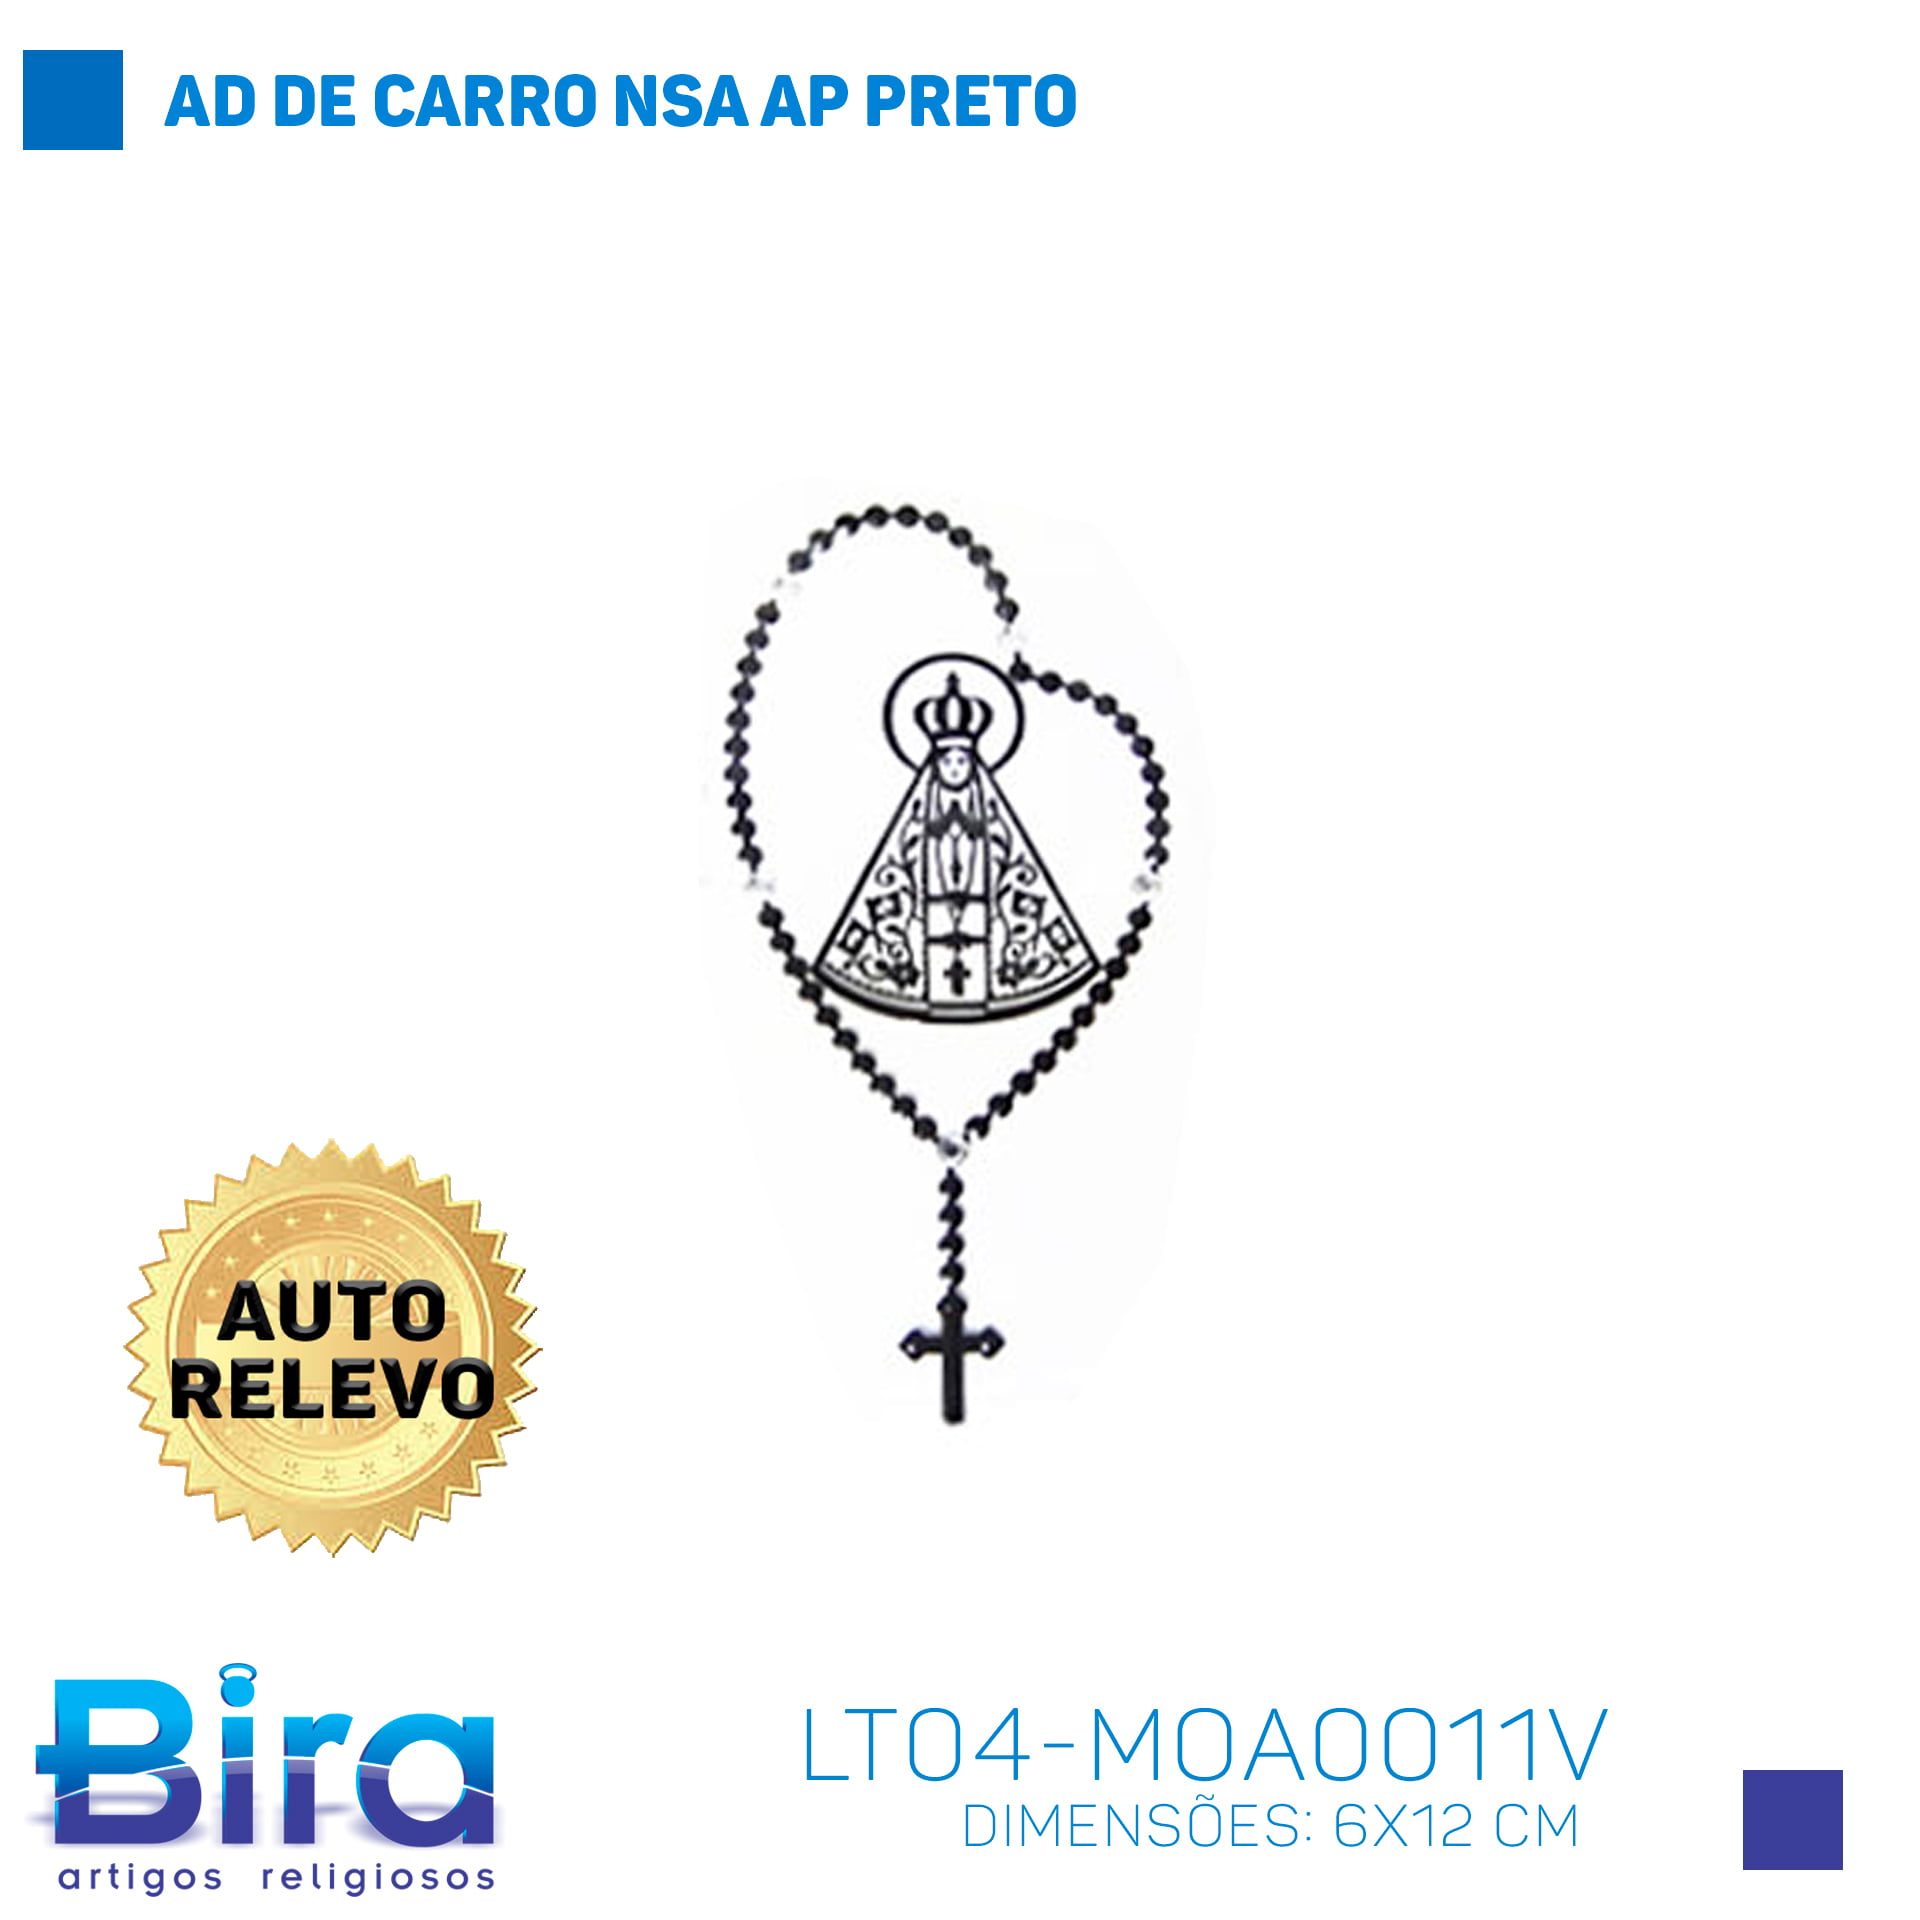 Bira Artigos Religiosos - Adesivo Decorativo N. Sra. Aparecida em Alto Relevo Preto - 6x12cm - Cód. LT04-MOA0011V